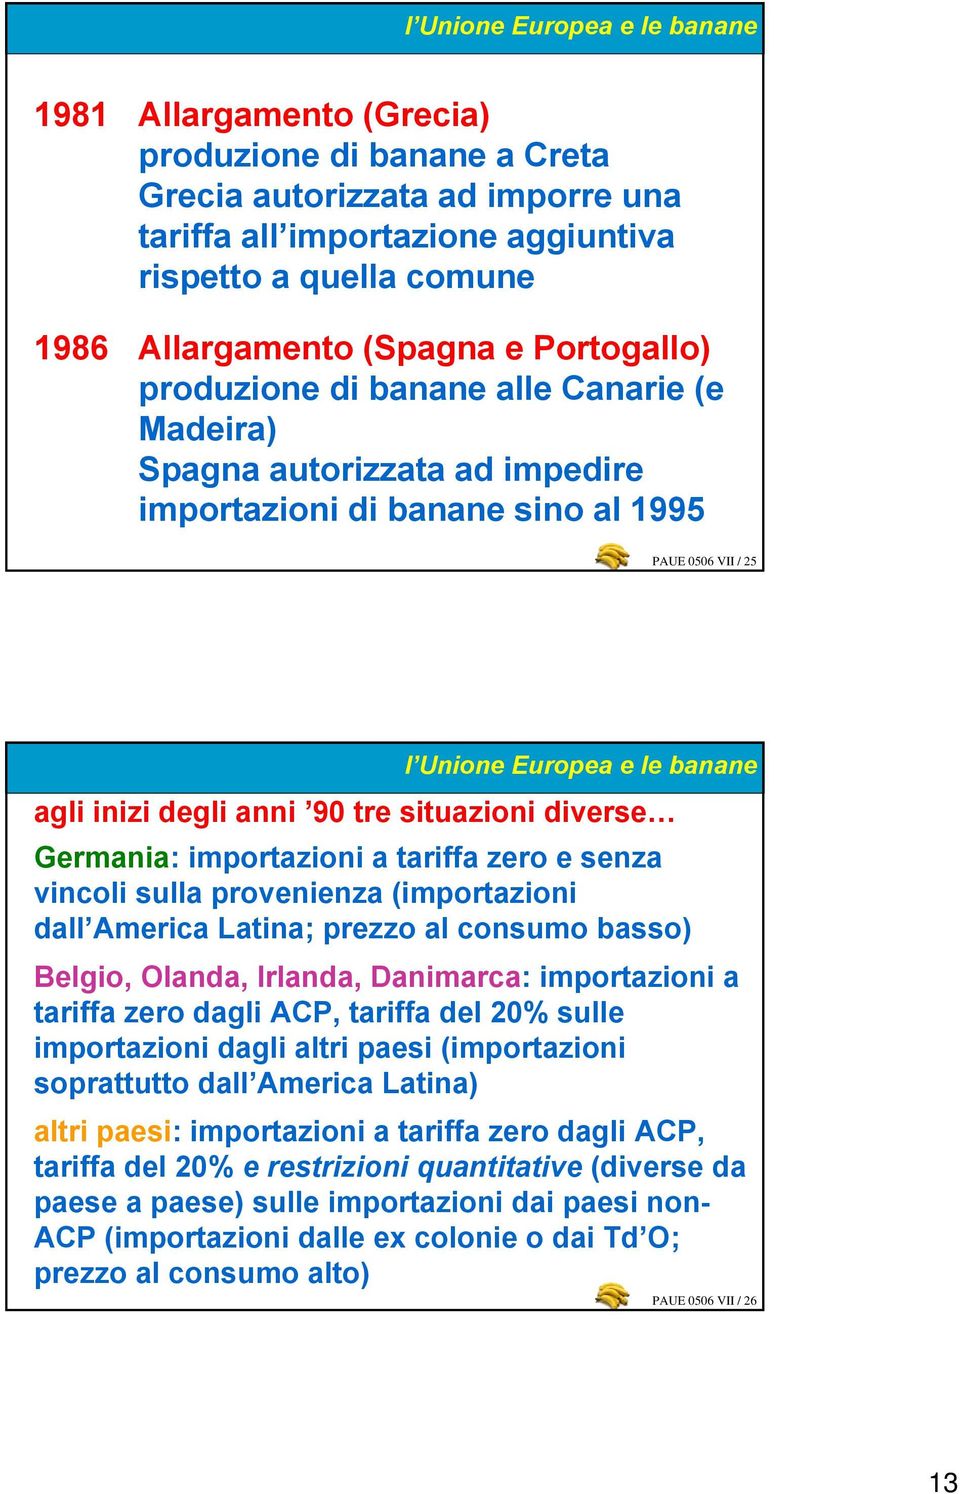 anni 90 tre situazioni diverse Germania: importazioni a tariffa zero e senza vincoli sulla provenienza (importazioni dall America Latina; prezzo al consumo basso) Belgio, Olanda, Irlanda, Danimarca: